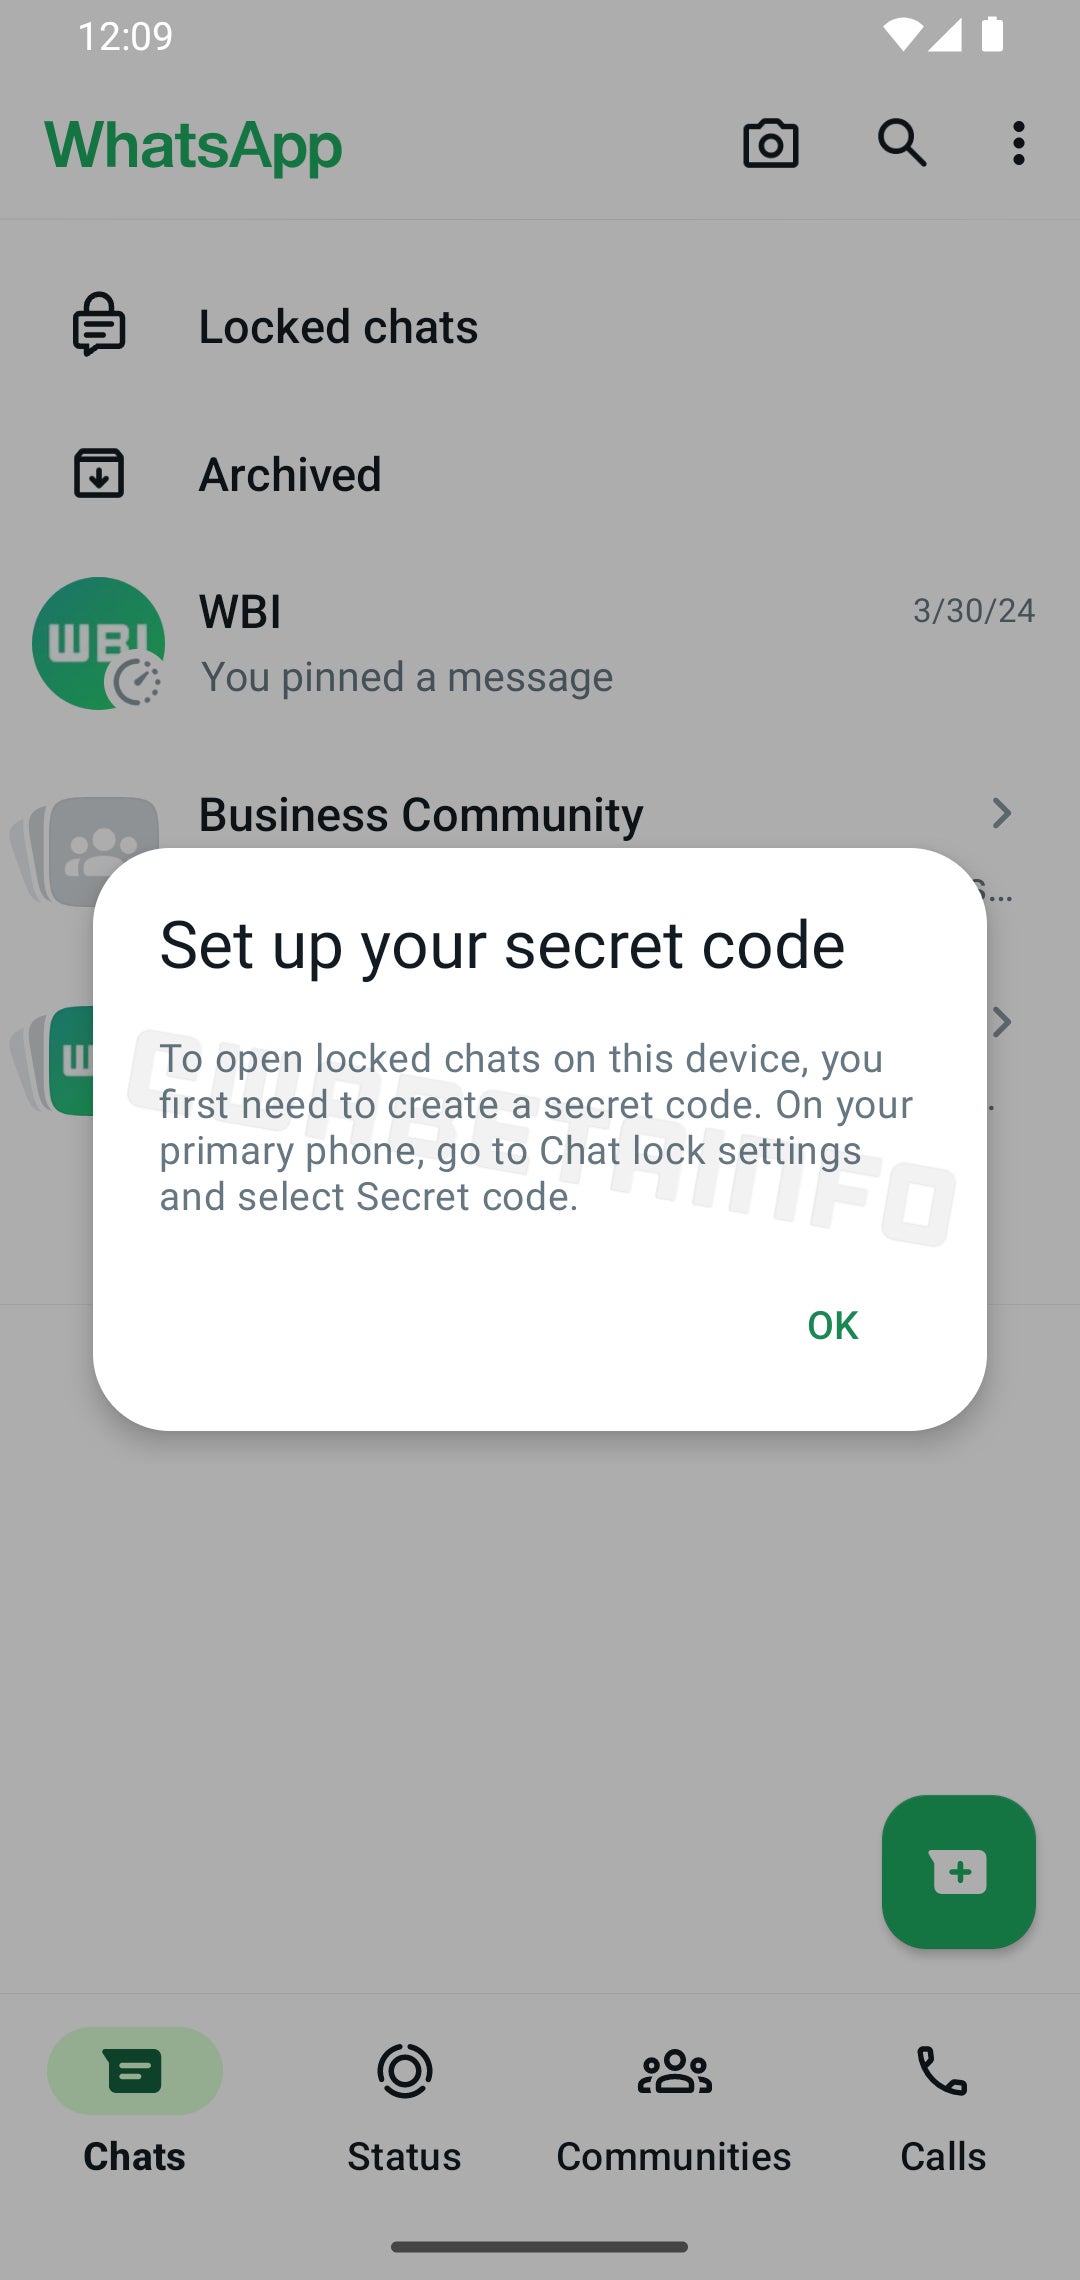 En son beta sürümde görüldüğü gibi, bağlantılı cihazlardaki kilitli sohbetler için yakında çıkacak WhatsApp özelliği (Image Credit–WABetaInfo) - WhatsApp'ın kilitli sohbetleri, tüm bağlı cihazlarınız arasında senkronize edilecek şekilde ayarlandı